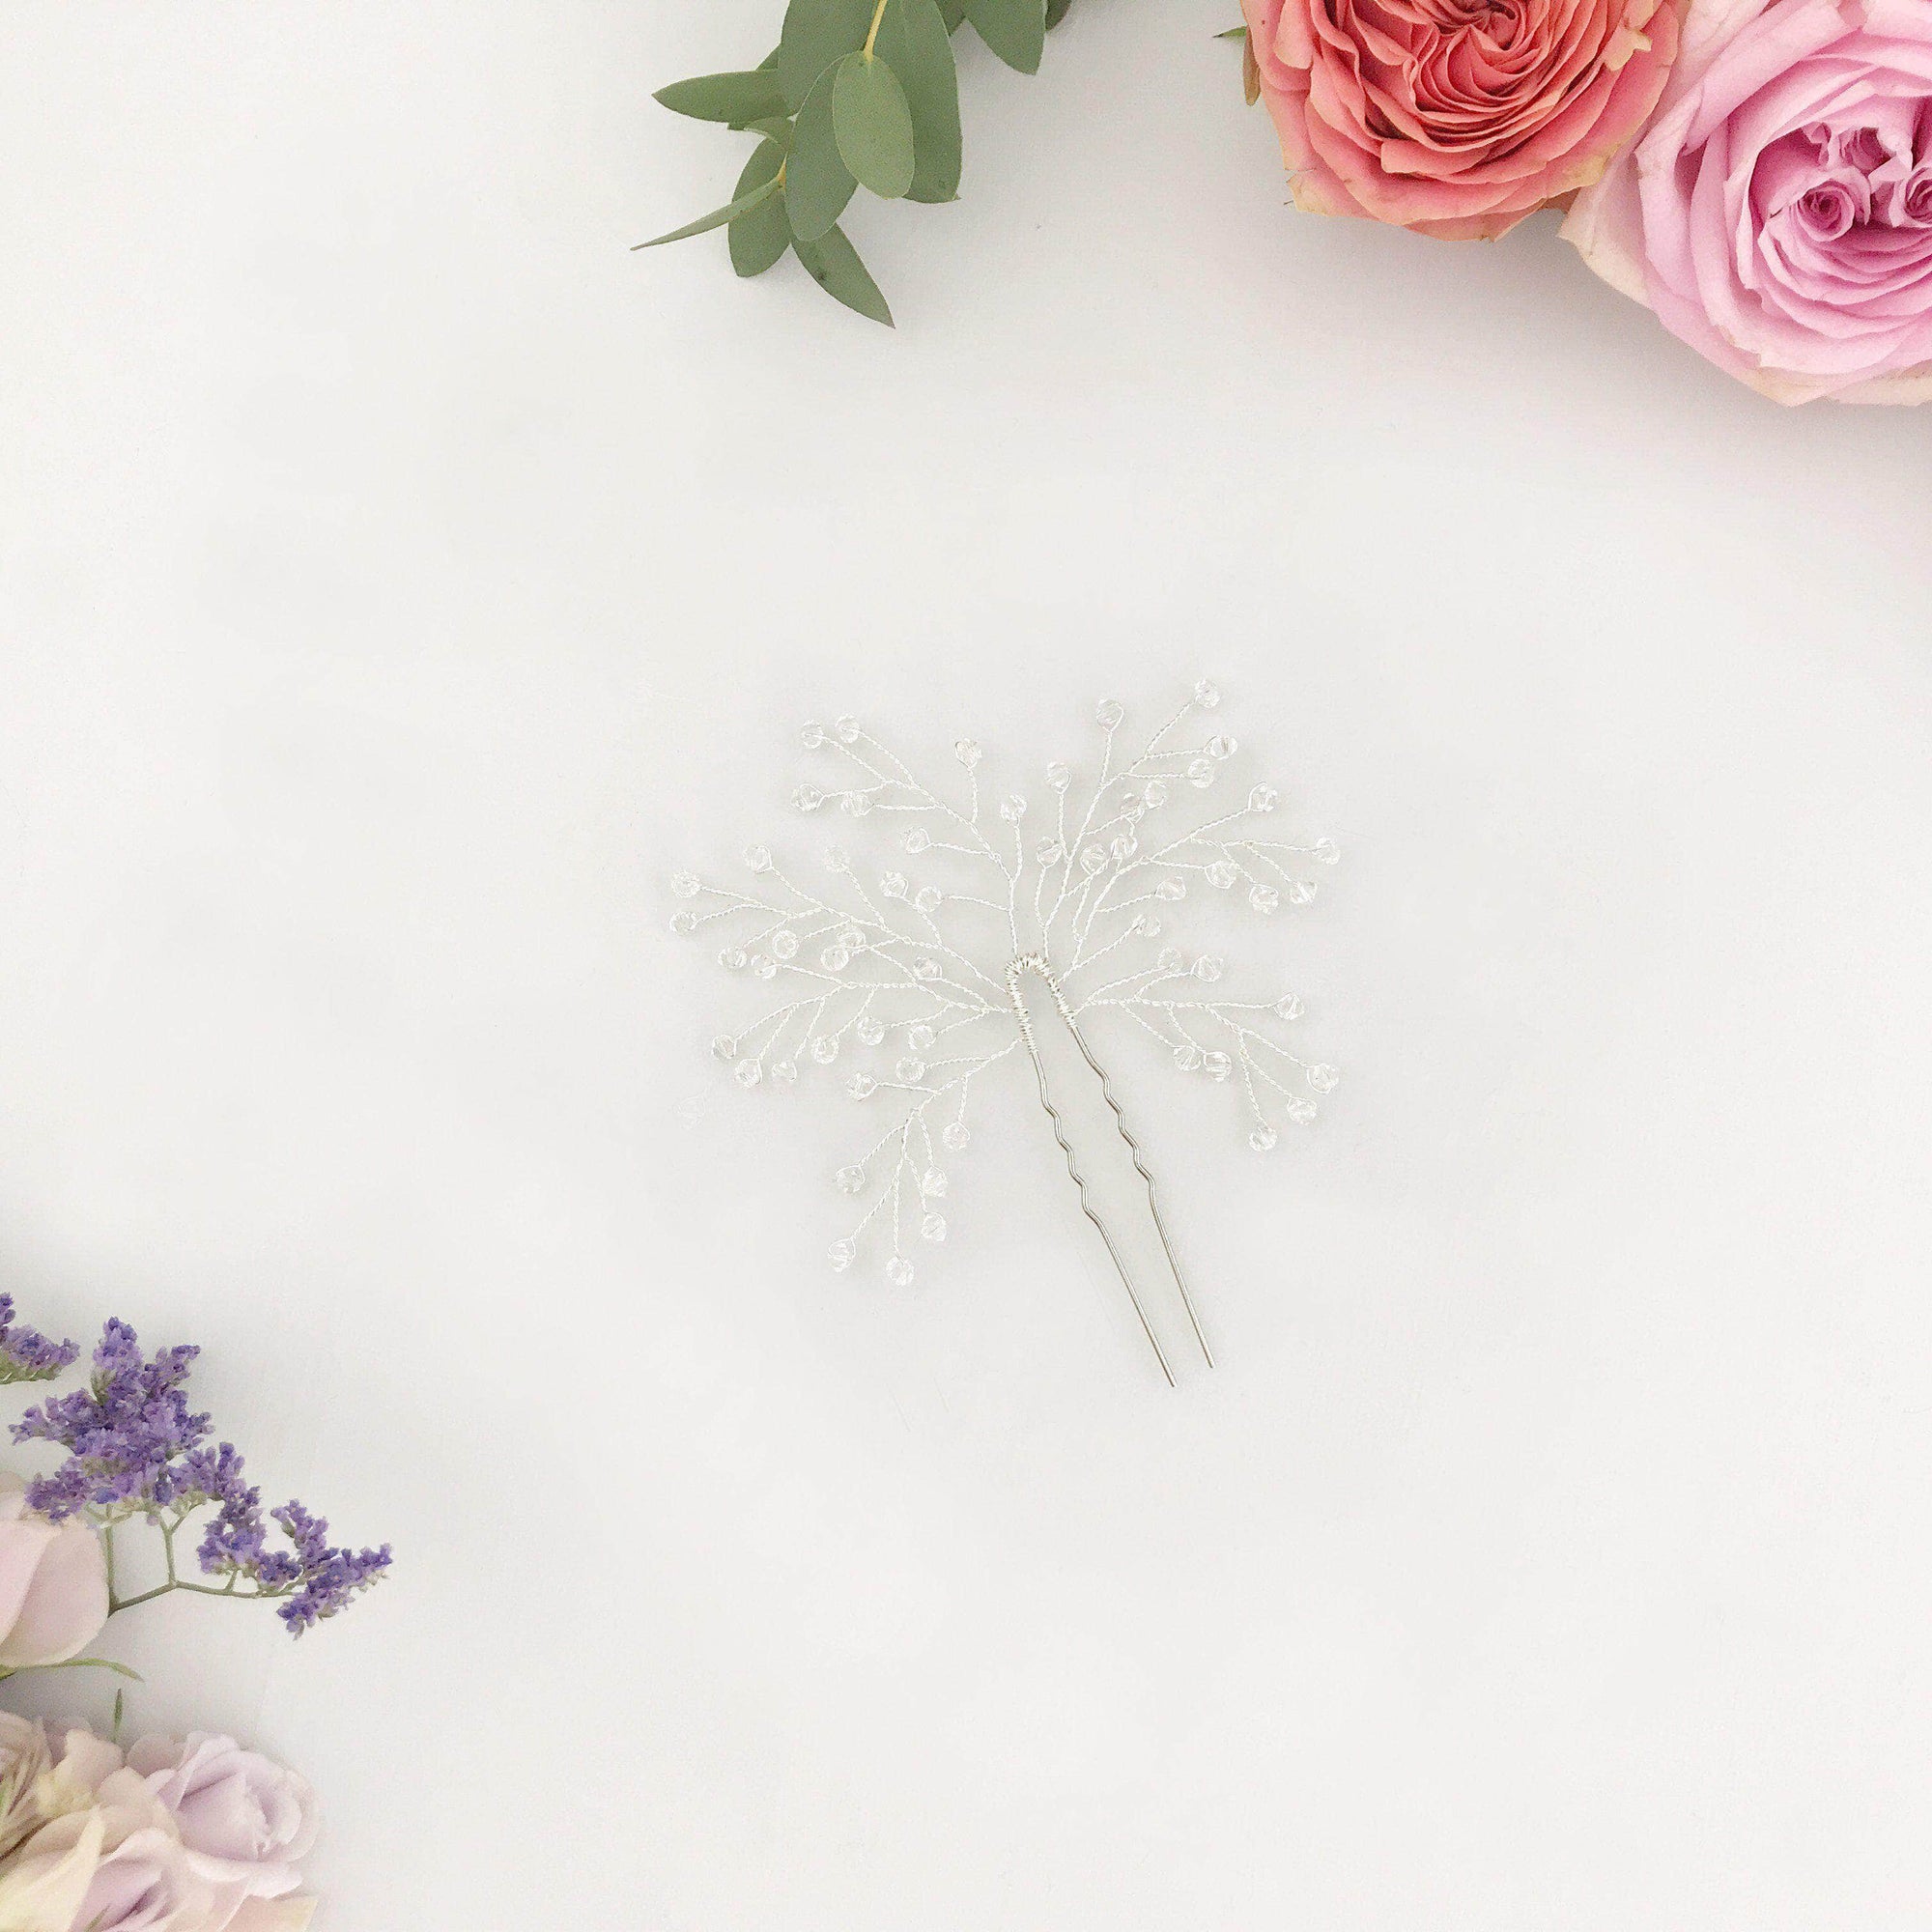 Wedding Hairpin Silver wedding hair pin with crystal spray - 'Eden'